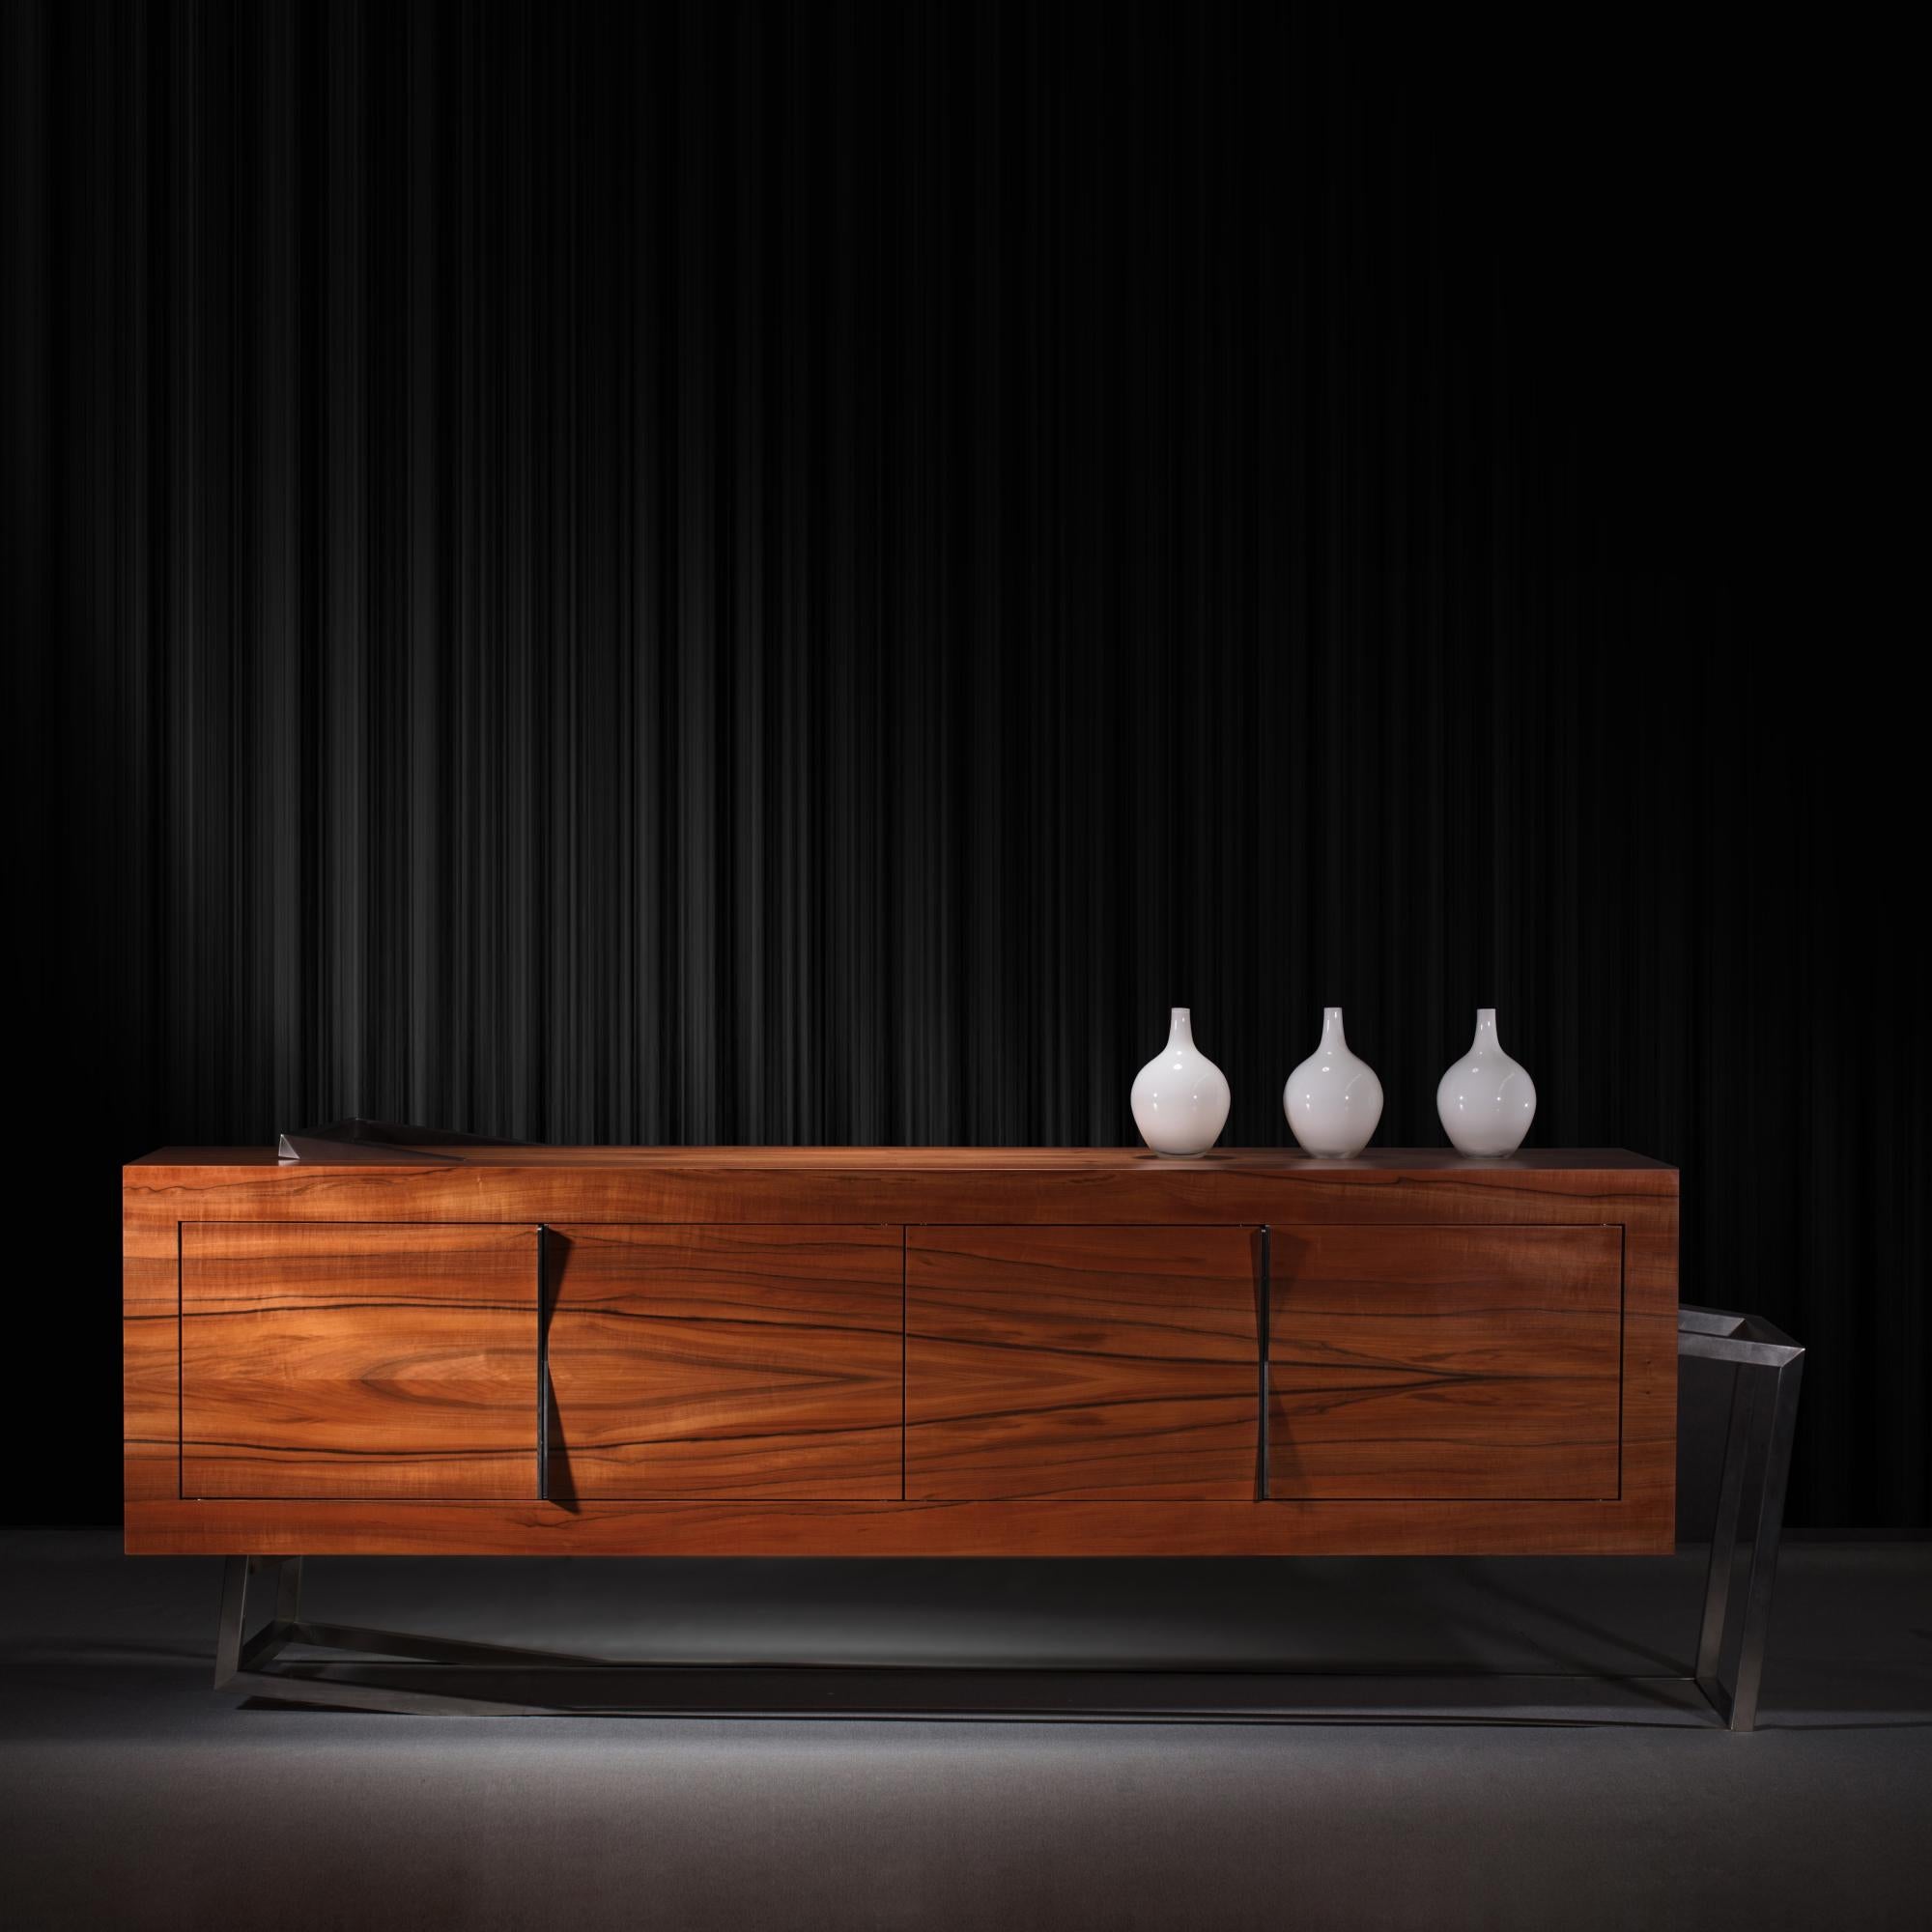 La crédence Sideboard ExCentric 1.0 est fabriquée en bois de tinéo et en acier inoxydable brossé et peut être placée dans une salle à manger ou un bureau. Son design contemporain et audacieux remet en question les perceptions d'un buffet habituel.